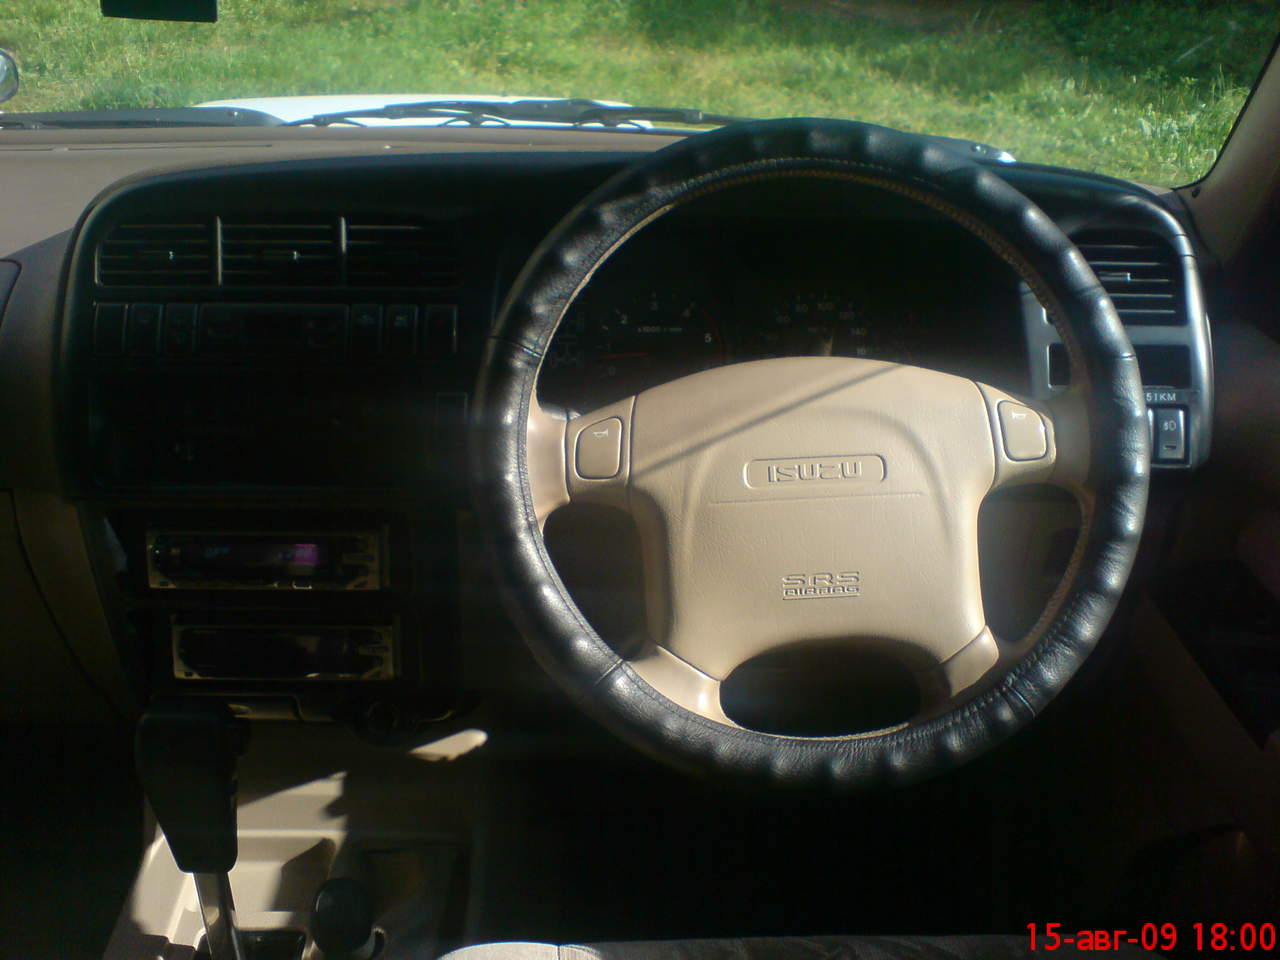 2000 Isuzu Bighorn specs, Engine size 3.0, Fuel type Diesel, Drive